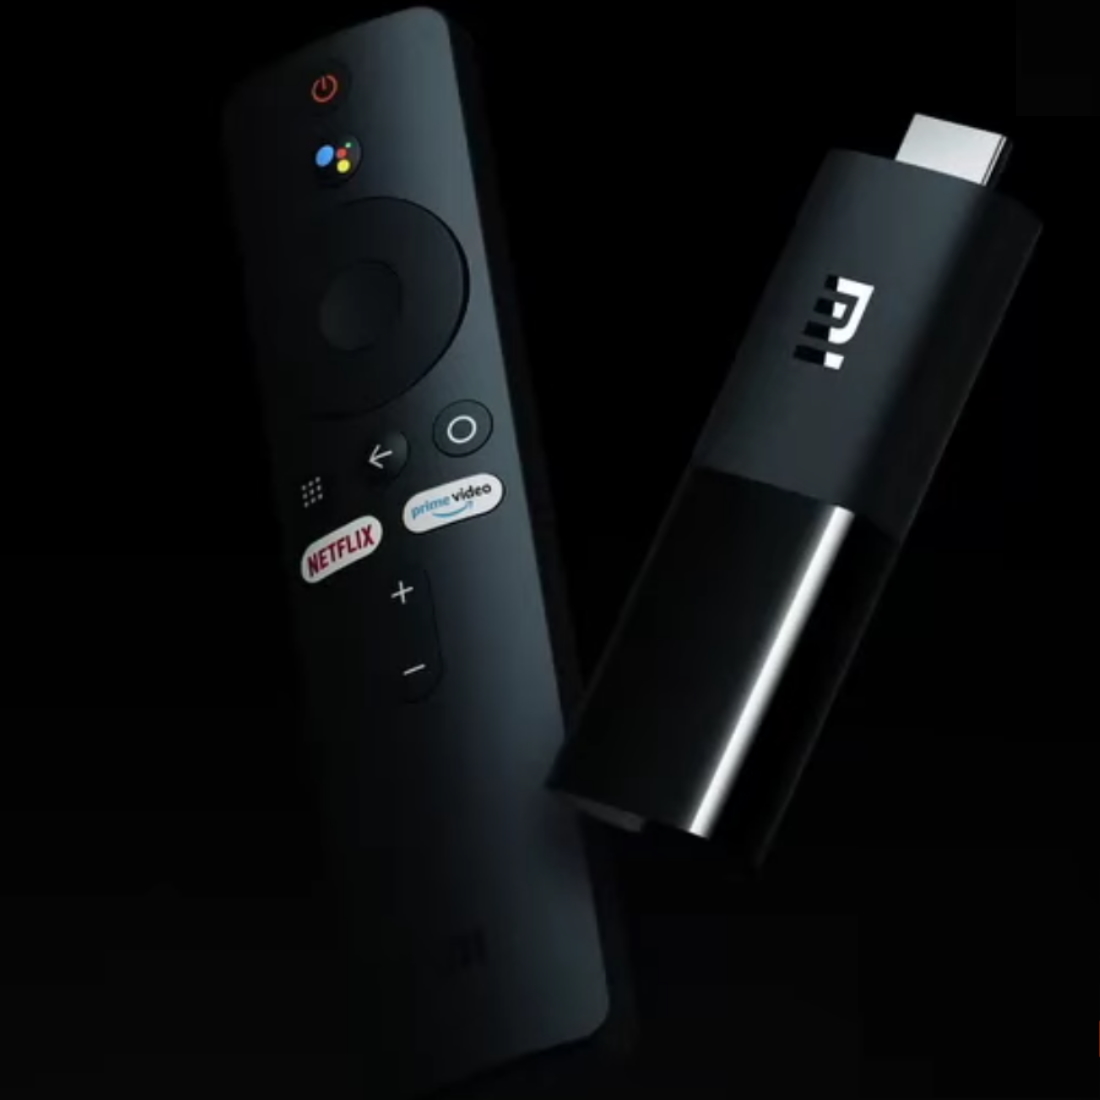 Xiaomi Mi Tv Stick 2k Купить